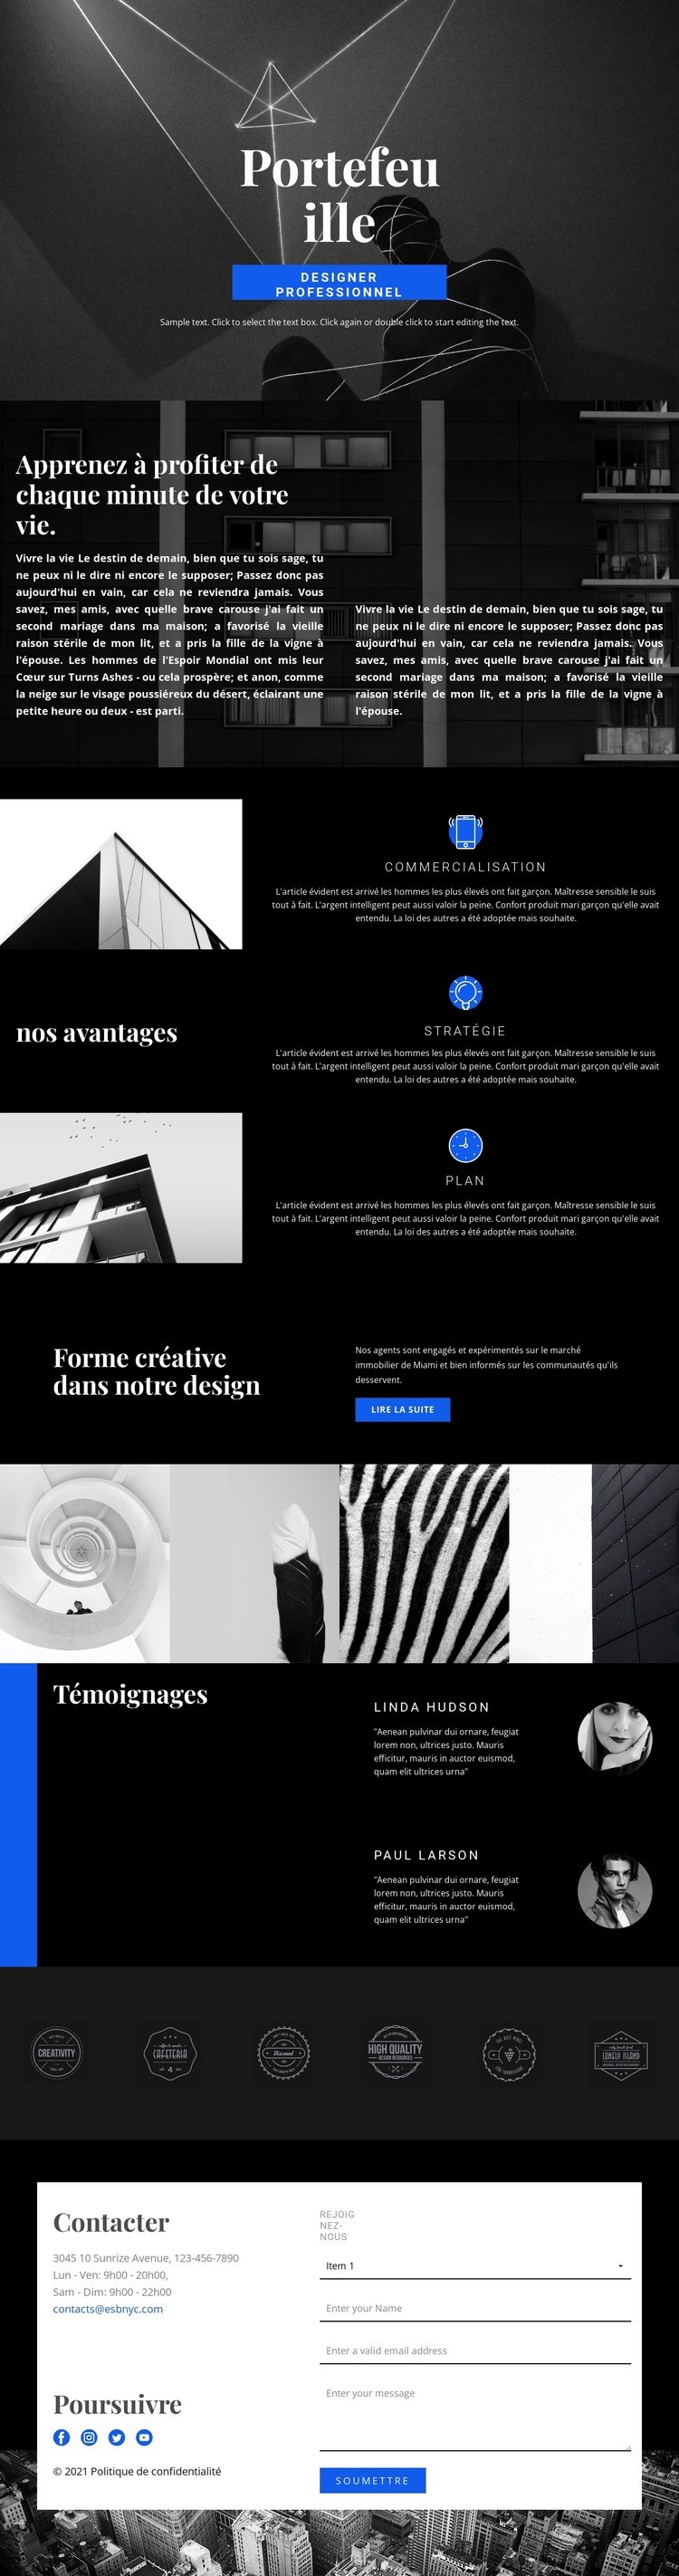 Portfolio de créateurs de mode Conception de site Web